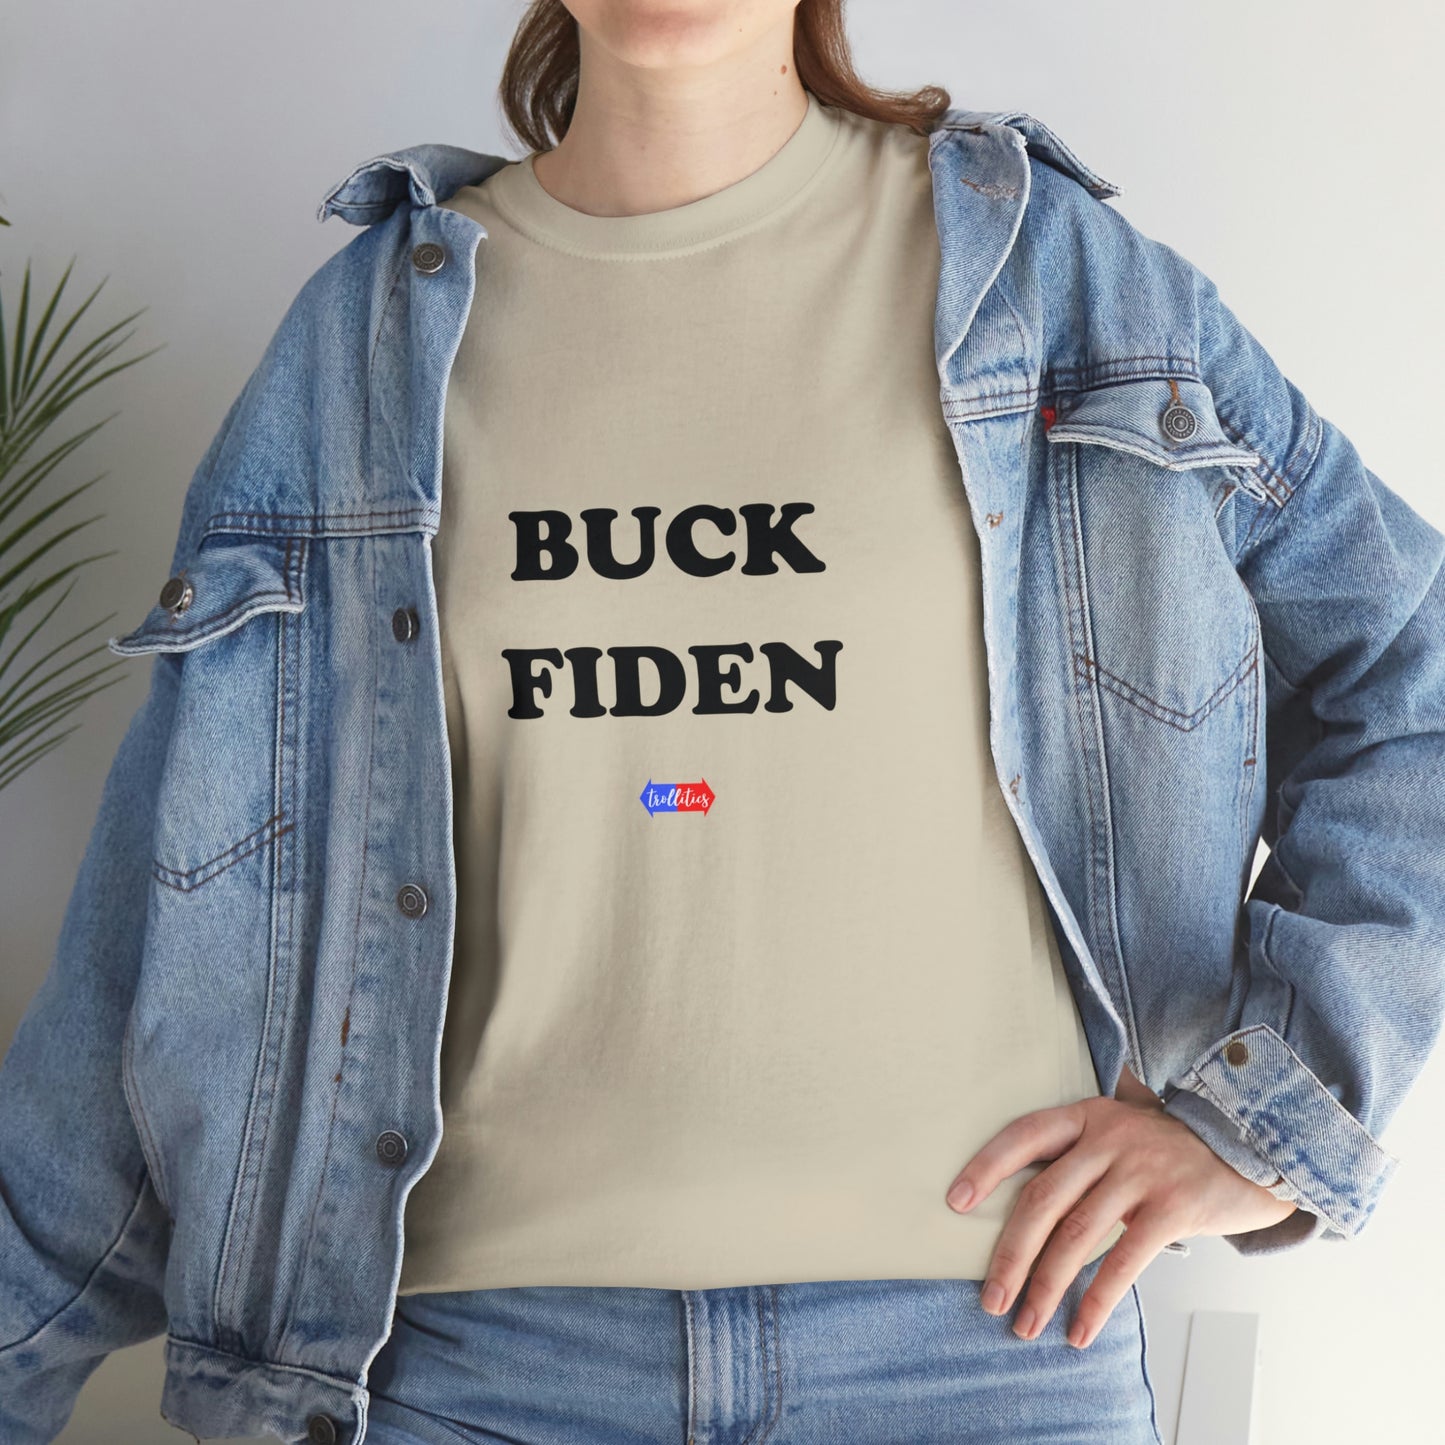 Buck Fiden Unisex Heavy Cotton Tee